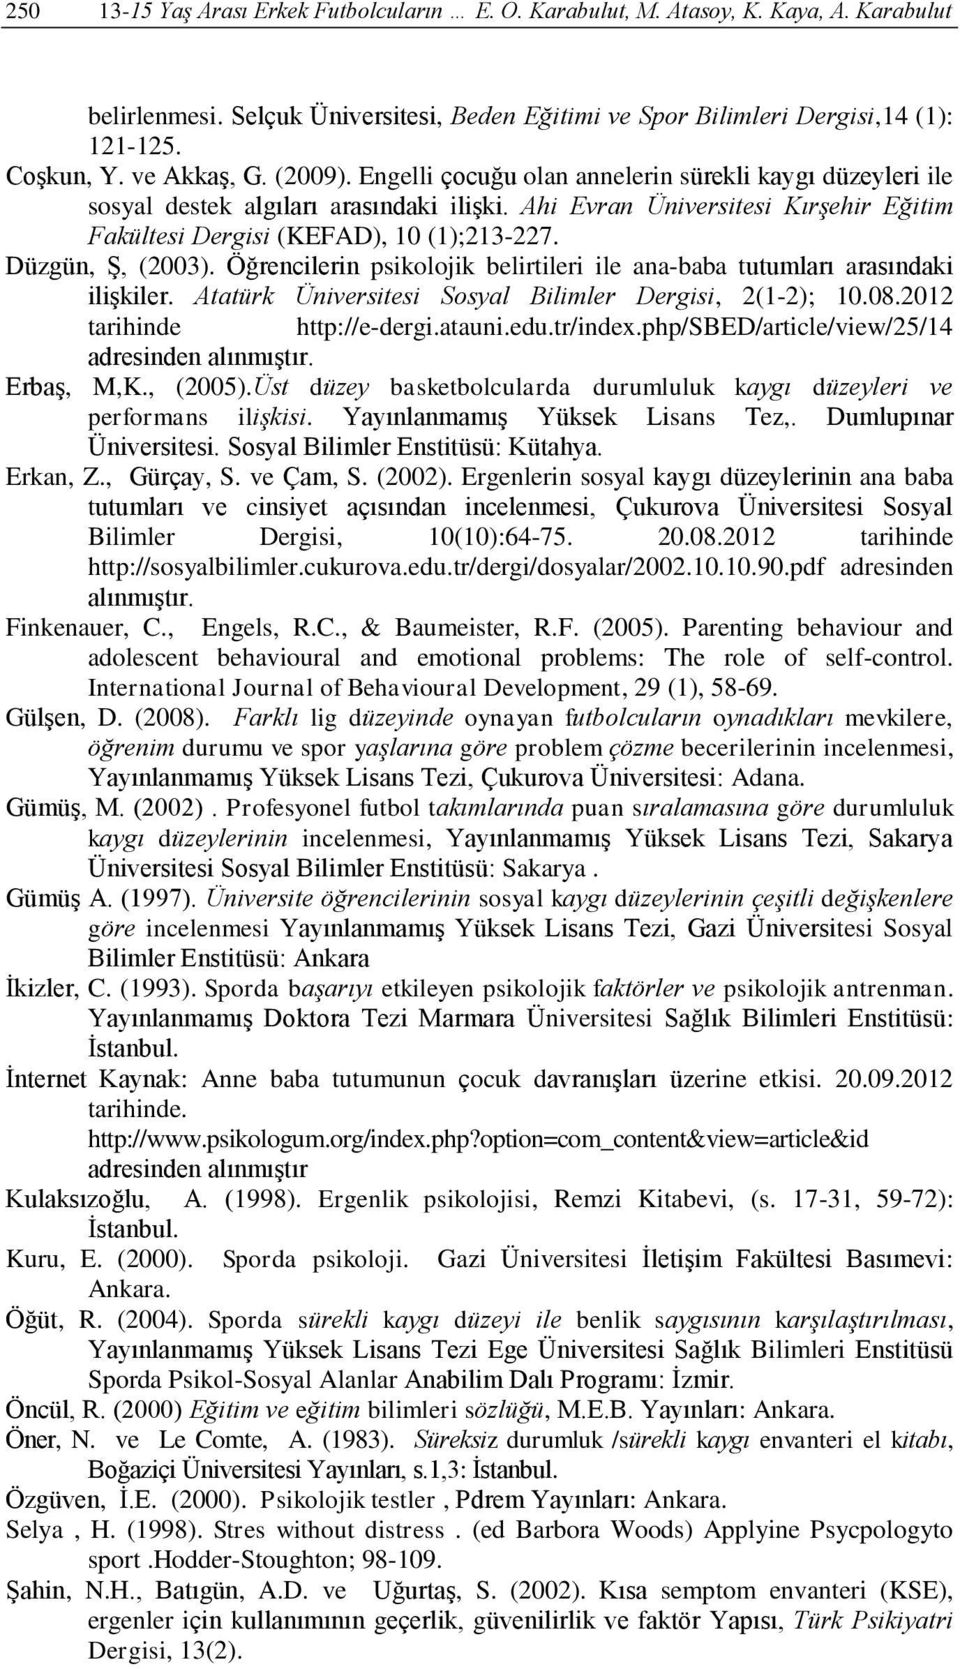 Ahi Evran Üniversitesi Kırşehir Eğitim Fakültesi Dergisi (KEFAD), 10 (1);213-227. Düzgün, Ş, (2003). Öğrencilerin psikolojik belirtileri ile ana-baba tutumları arasındaki ilişkiler.